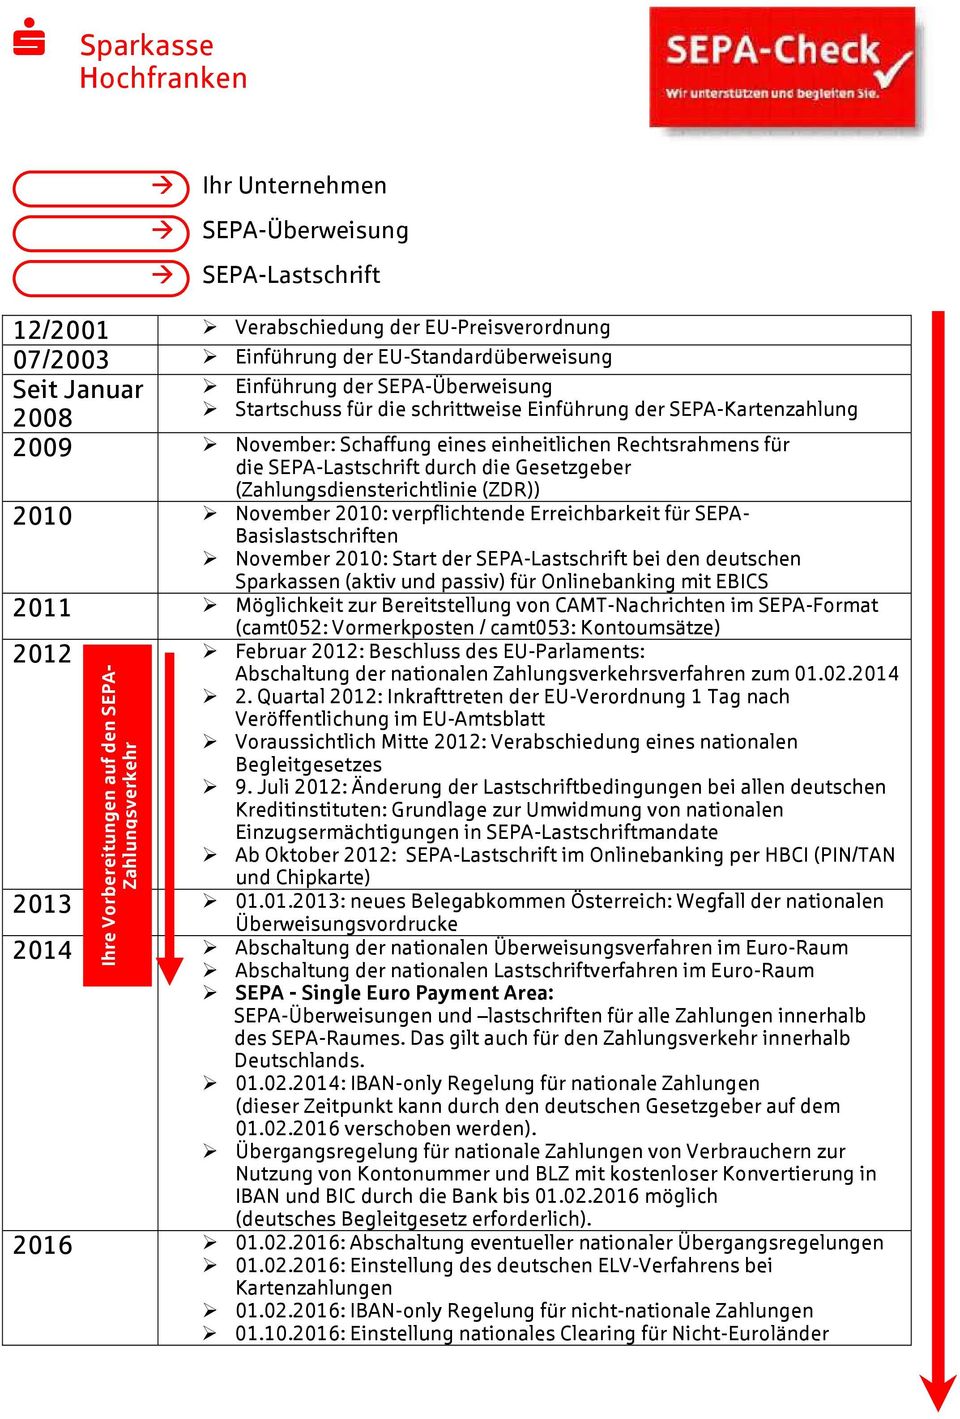 Erreichbarkeit für SEPA- Basislastschriften November 2010: Start der SEPA-Lastschrift bei den deutschen n (aktiv und passiv) für Onlinebanking mit EBICS 2011 Möglichkeit zur Bereitstellung von